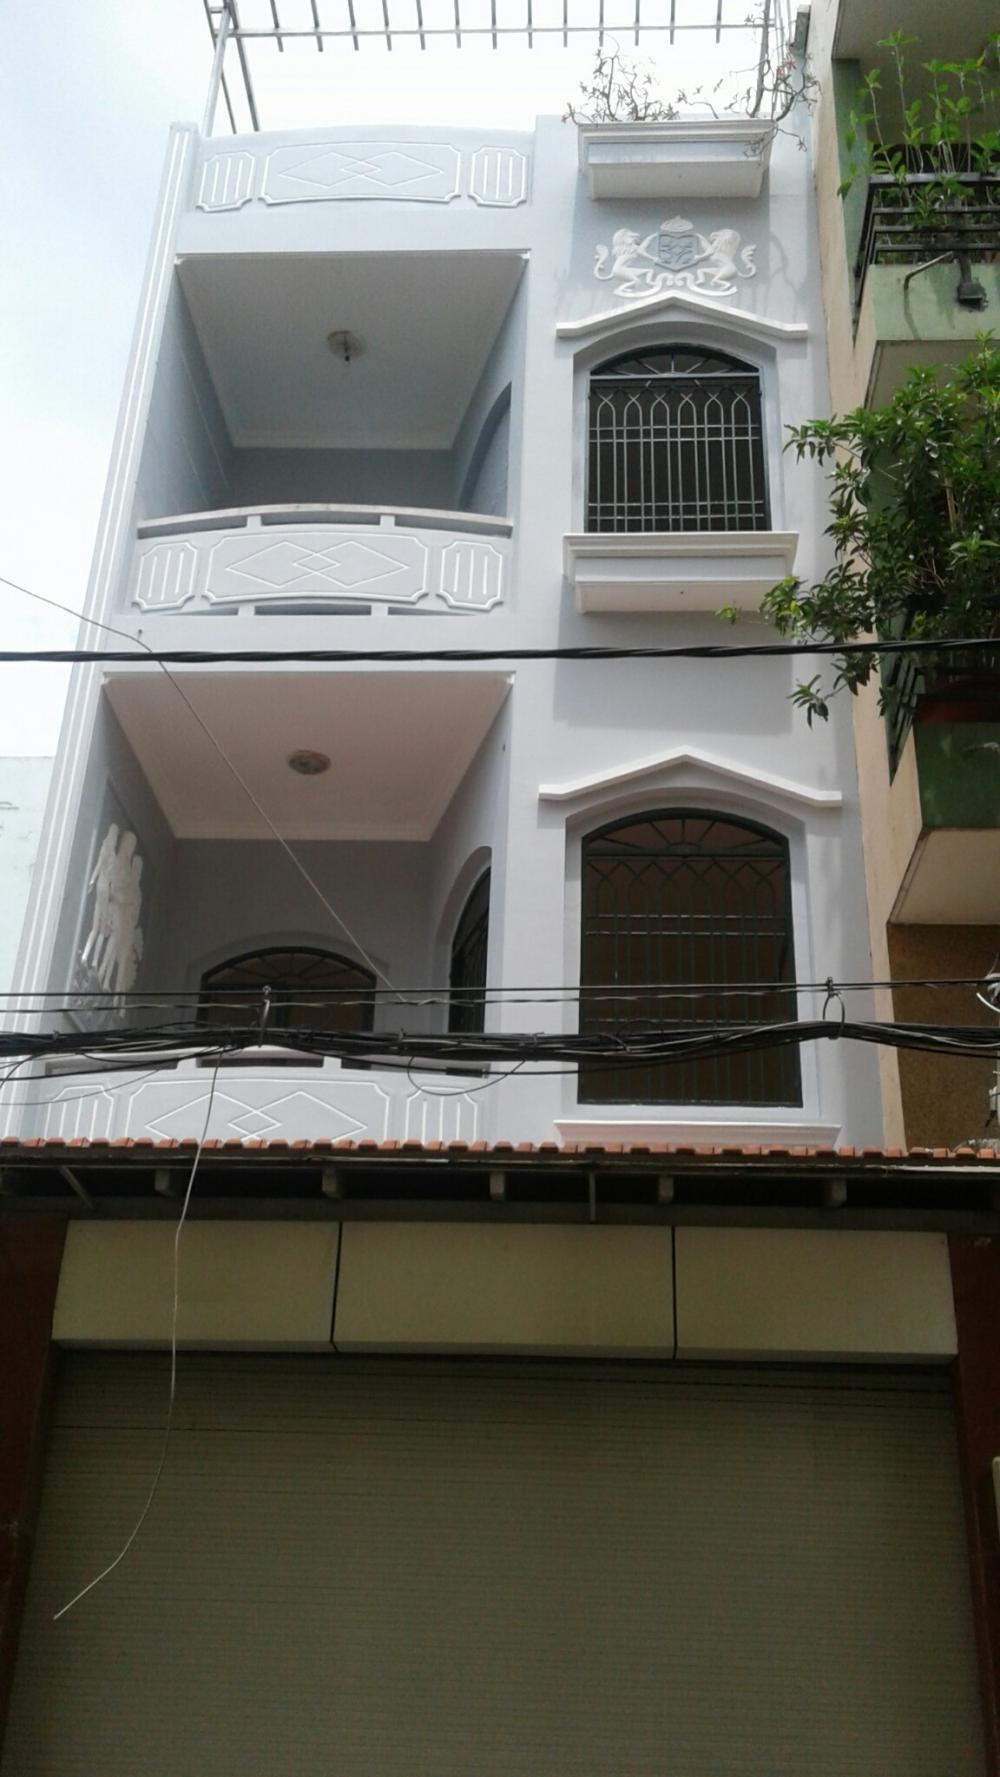 Bán gấp 2 nhà lầu liền kề hẻm 143, Phạm Huy Thông, P. 6, Q. Gò Vấp